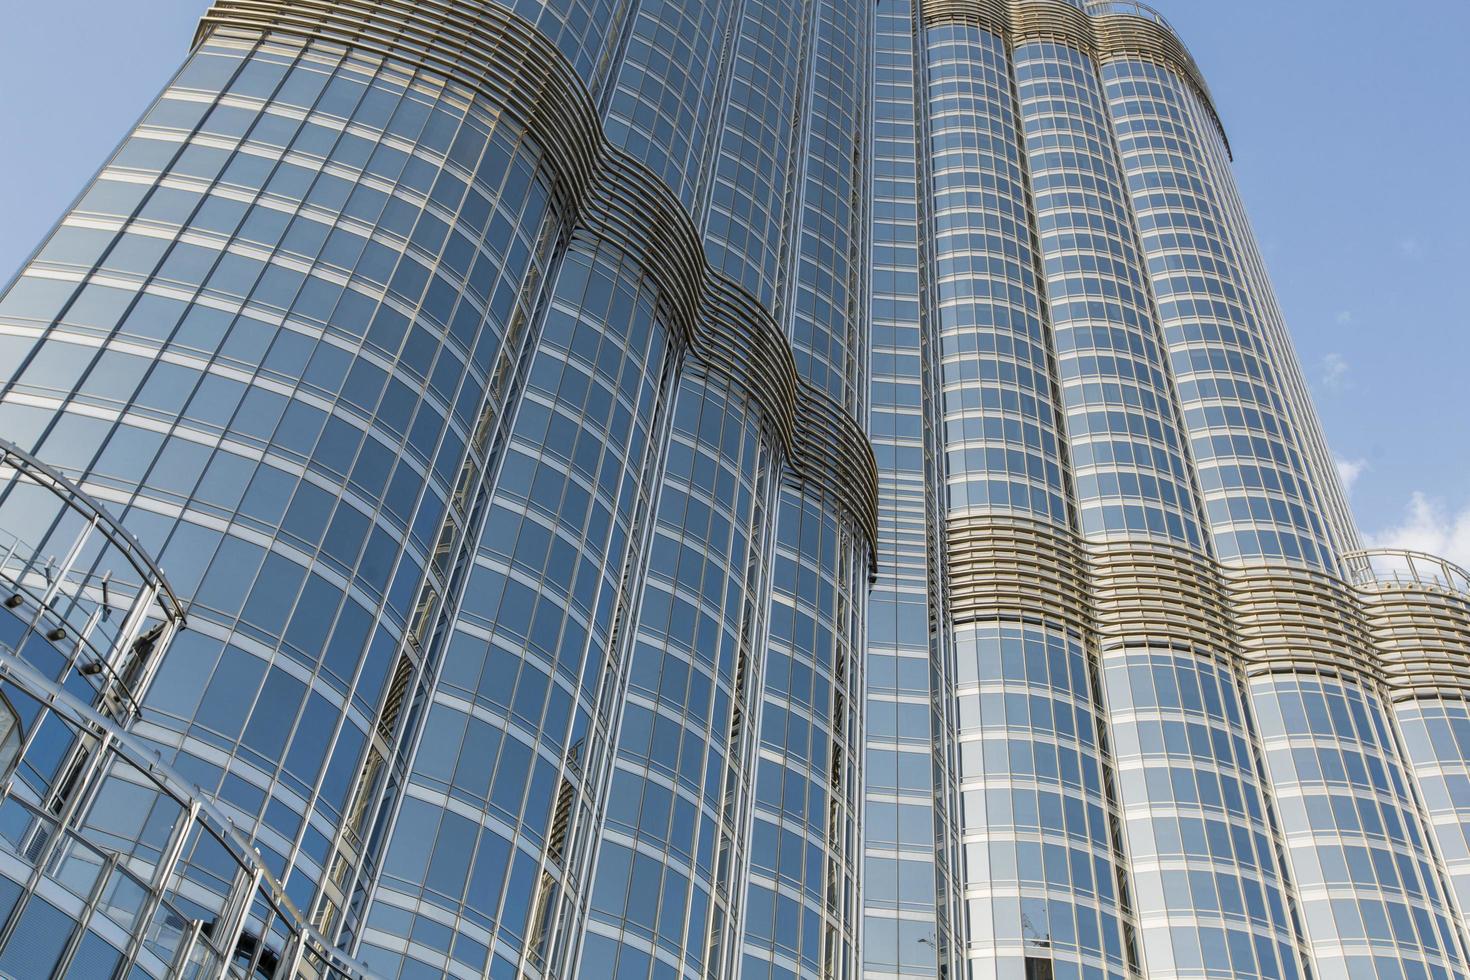 dubai, Verenigde Arabische Emiraten, 7 mei 2015 - uitzicht op burj khalifa in dubai. deze wolkenkrabber is met 828 m het hoogste door mensen gemaakte bouwwerk dat ooit is gebouwd. foto